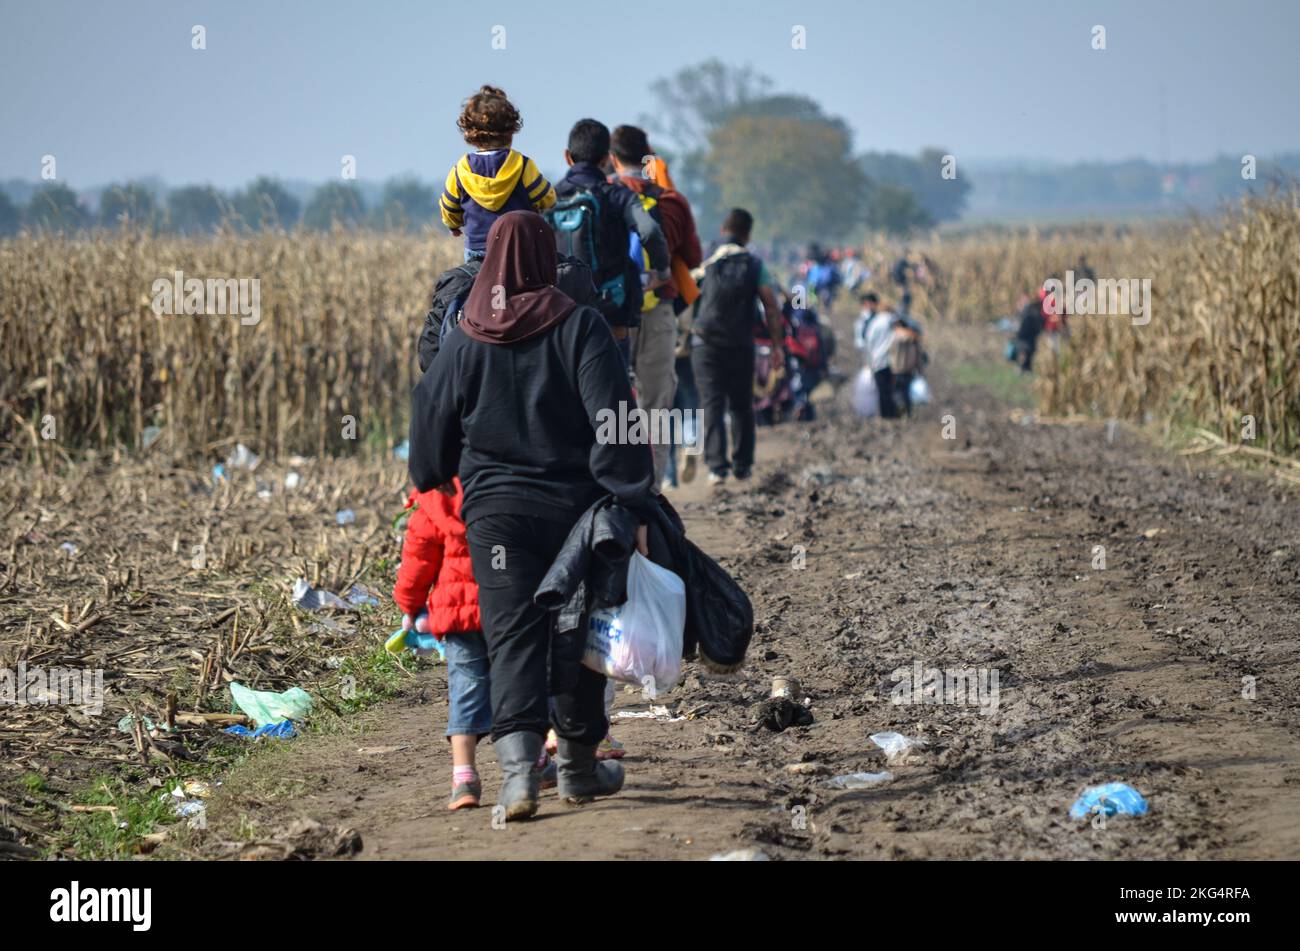 Flüchtlinge, die durch das Maisfeld laufen. Migranten, die versuchen, die kroatische Grenze zu überqueren, um in die Europäische Union (EU) zu gelangen, um ein besseres Leben zu führen. Stockfoto